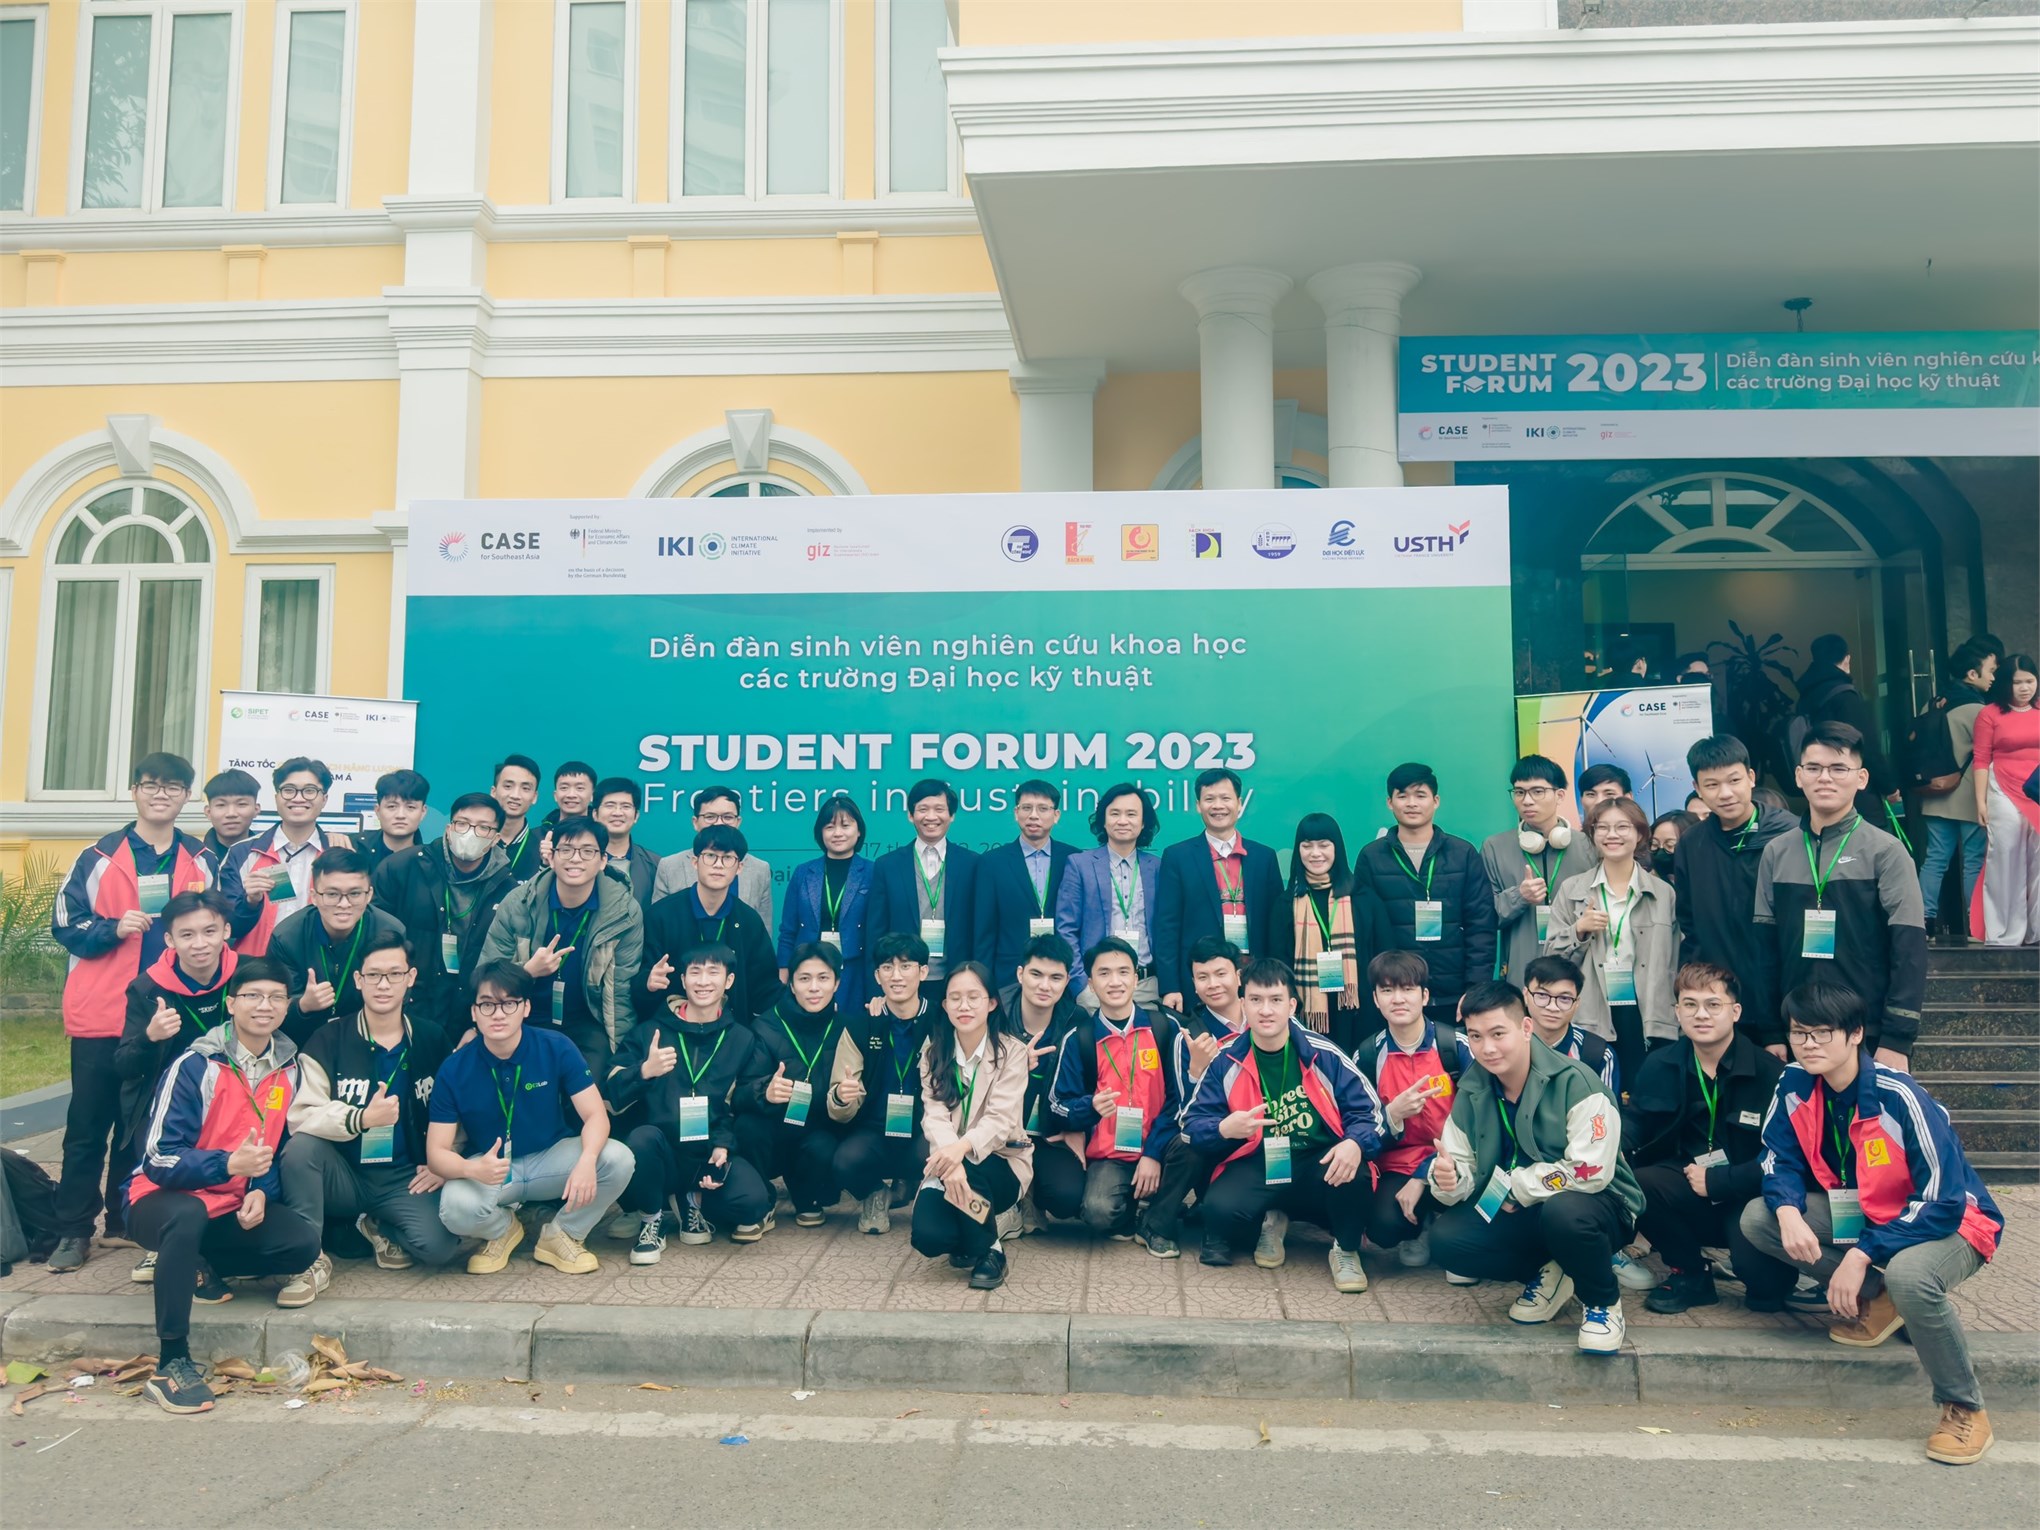 Sinh viên Khoa Điện tham dự Diễn đàn sinh viên nghien cứu khoa học các trường Đại học Kỹ thuật năm 2023 (SF23)